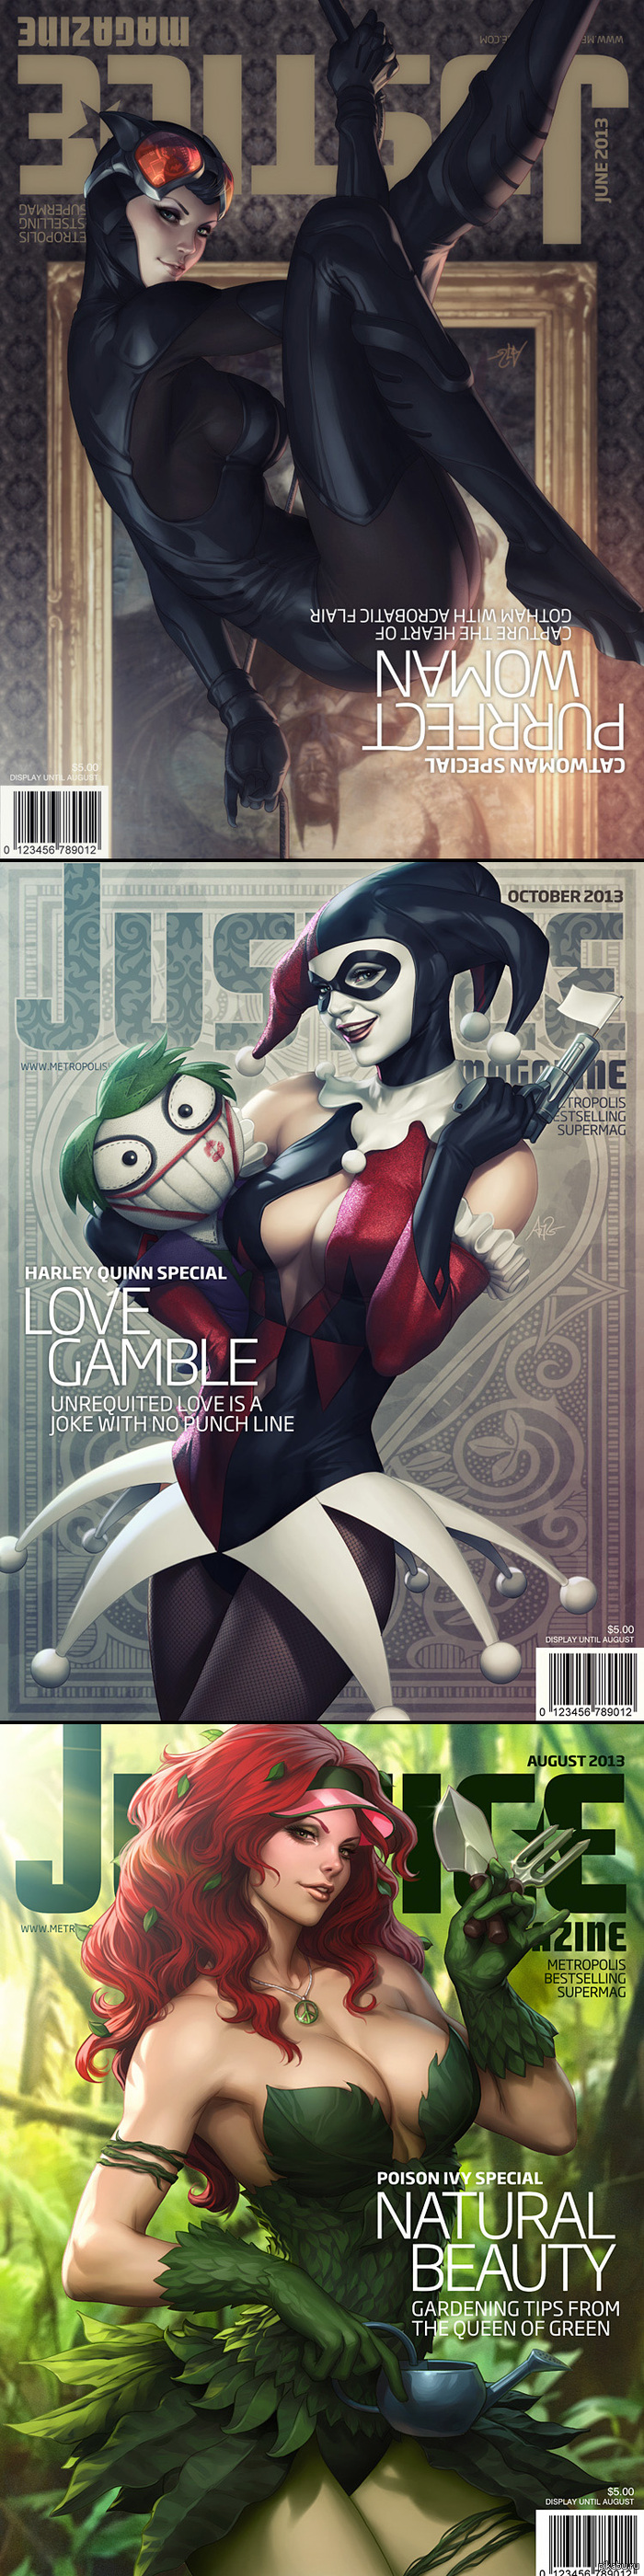 Justice magazine     :